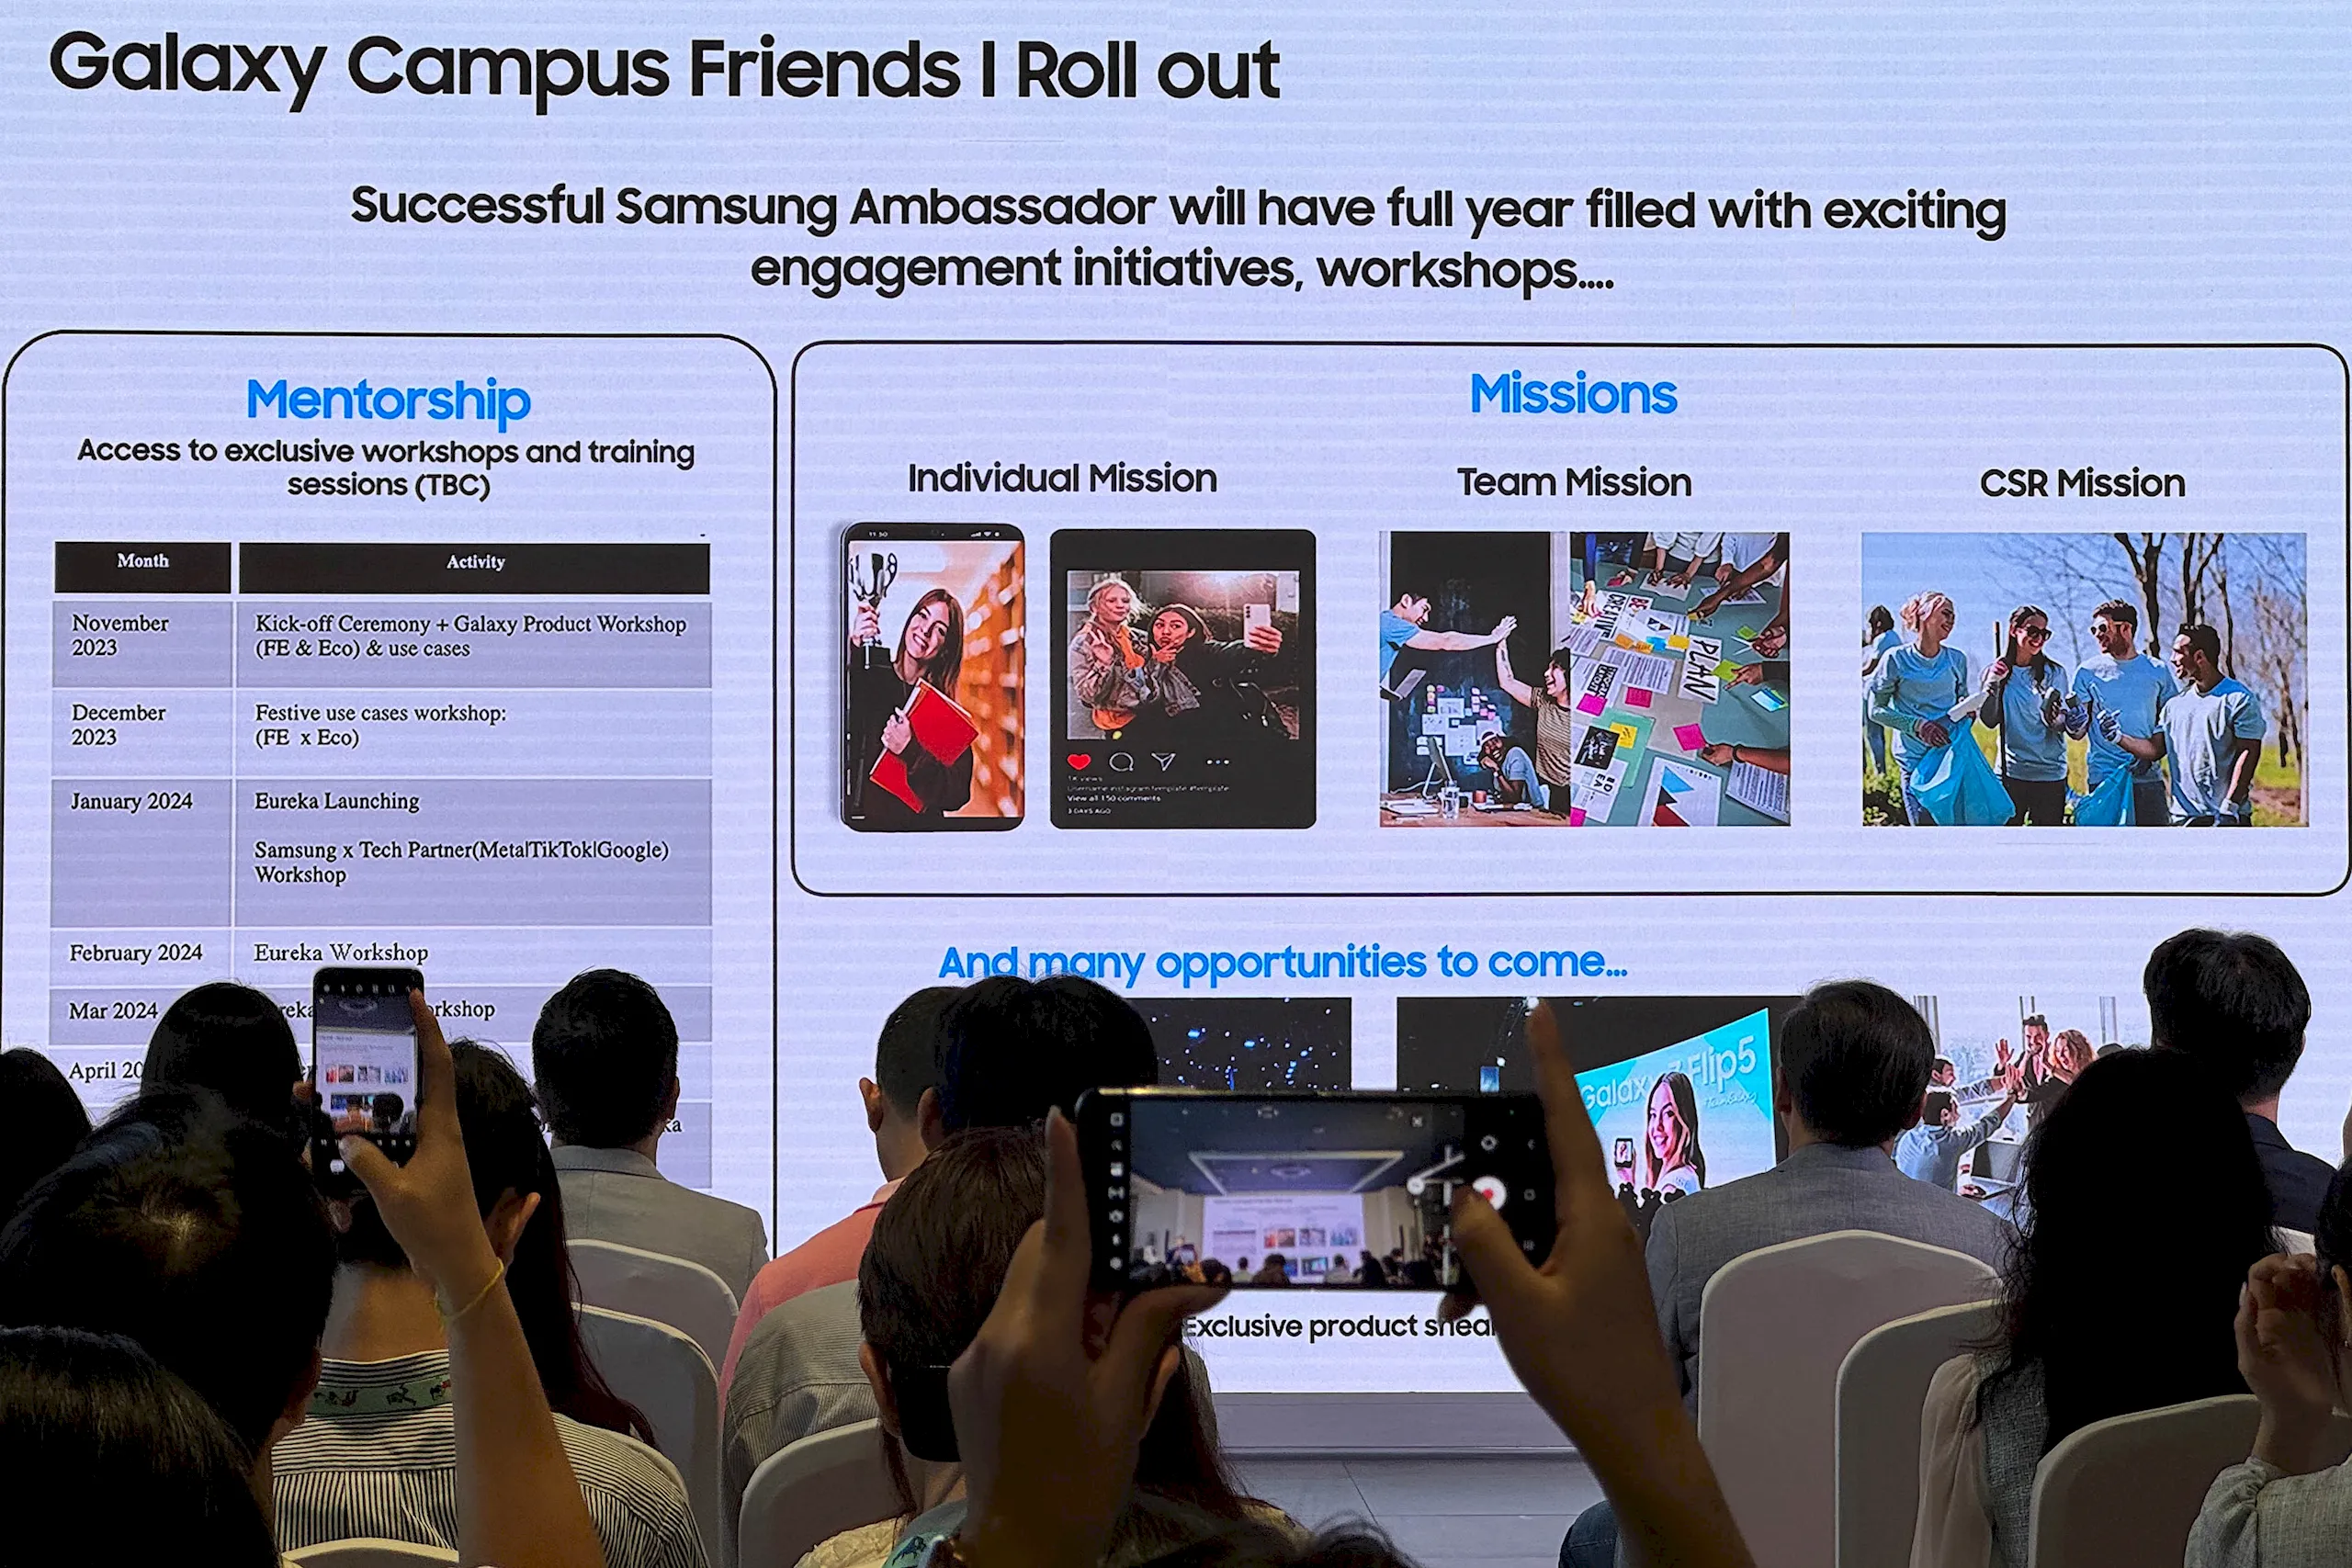 Samsung chính thức công bố 50 bạn sinh viên tài năng nhất từ chương trình Galaxy Campus Friends